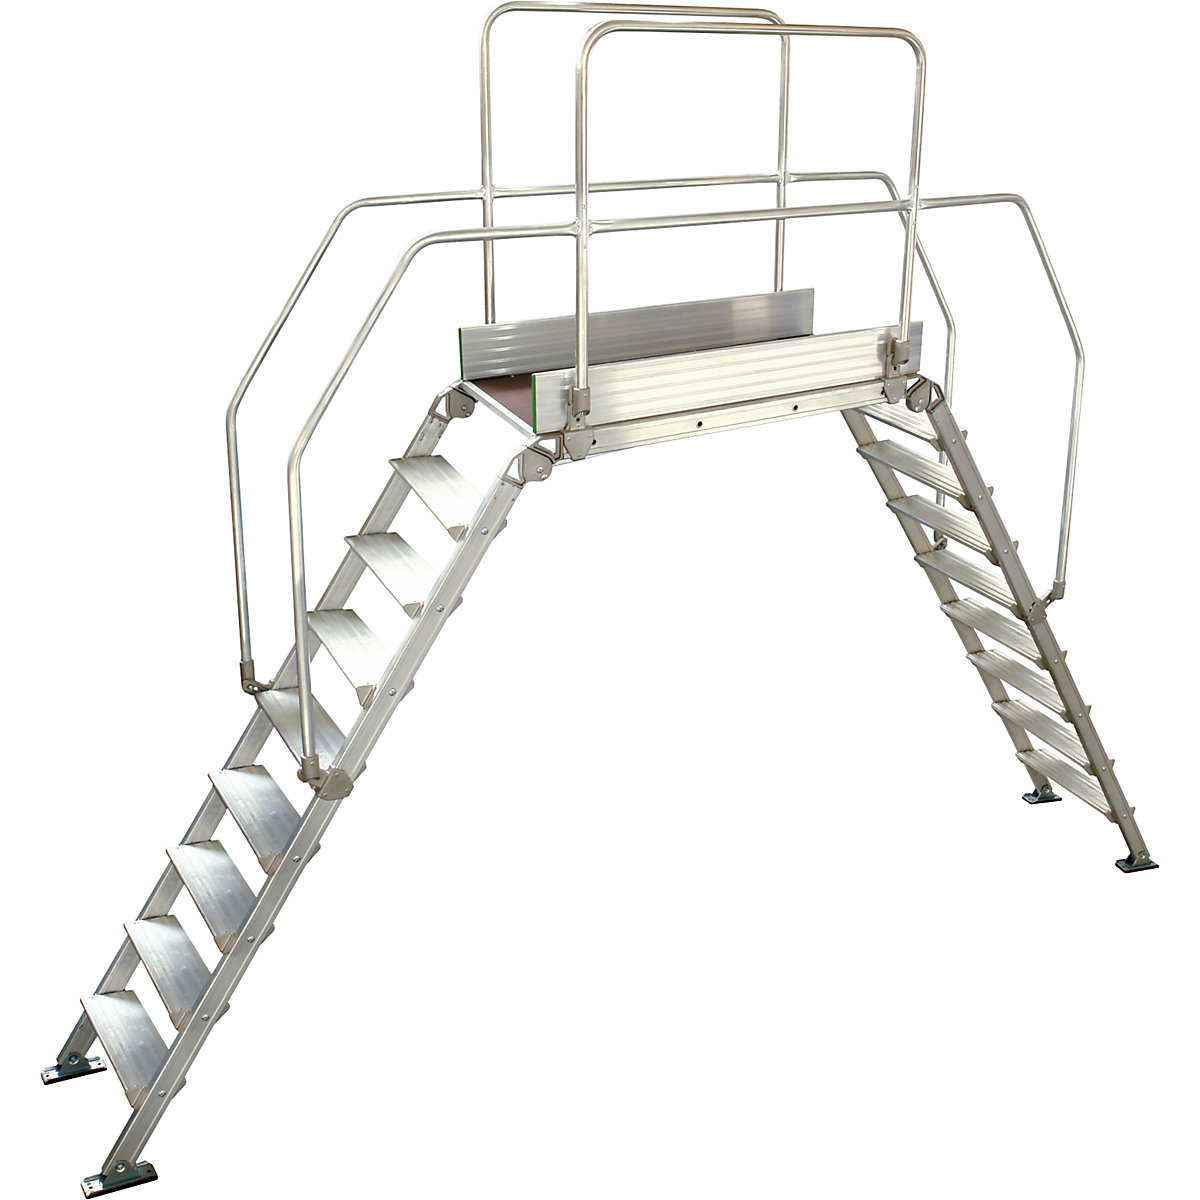 Aluminijasta premostitvena lestev, skupna obremenitev 200 kg, 9 stopnic, podest 1200 x 530 mm